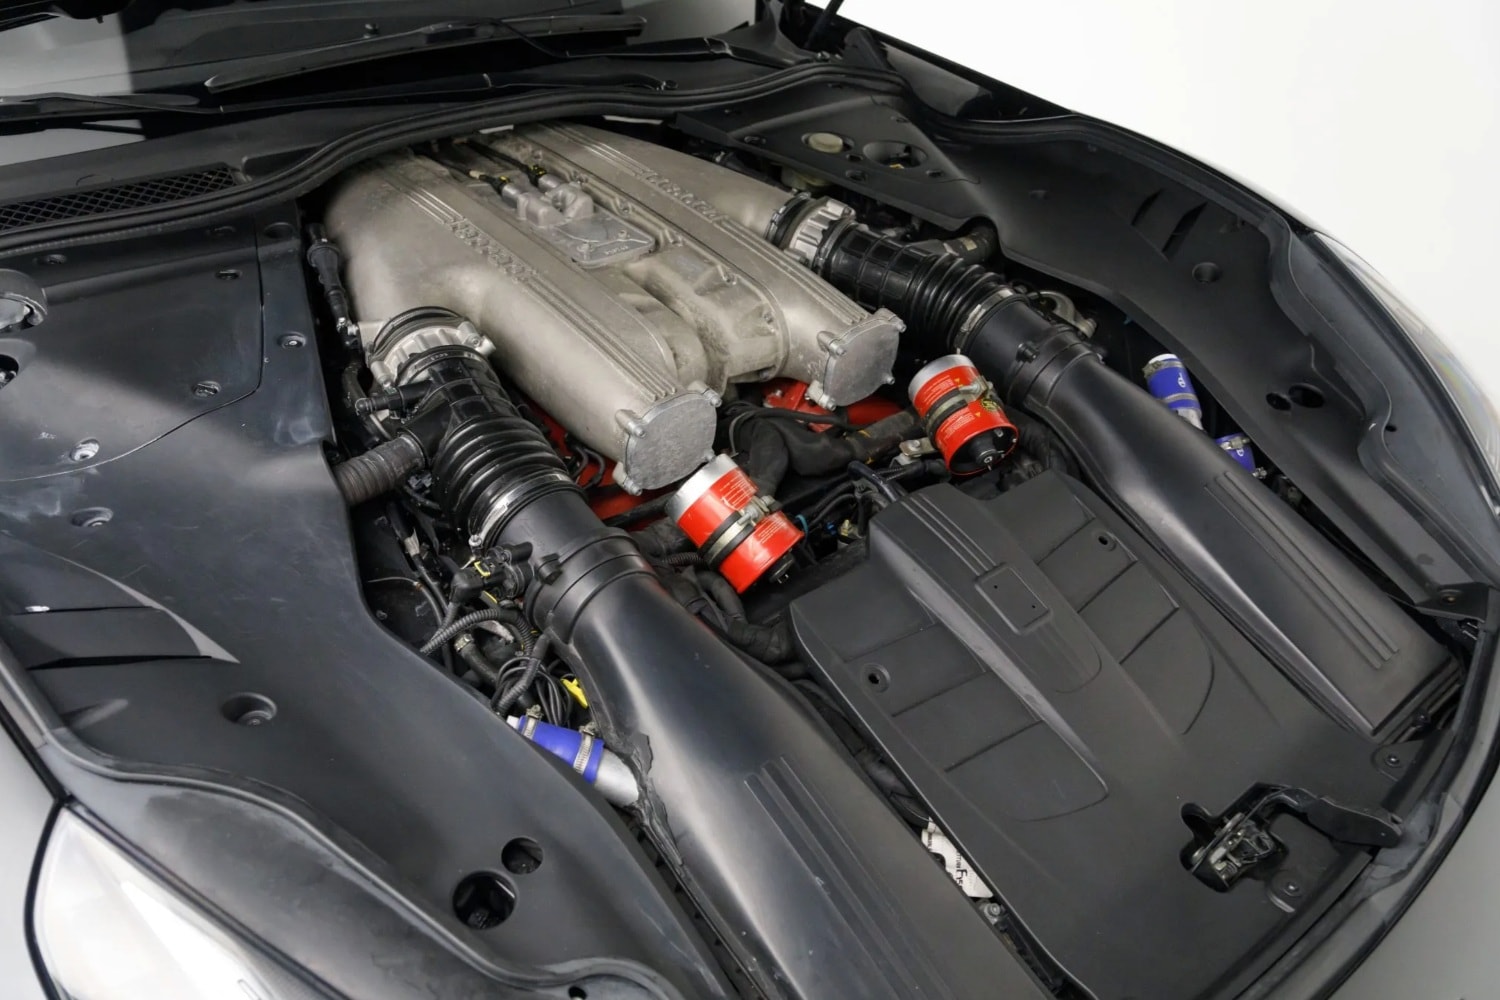 O motor V12 que equipa o protótipo de desenvolvimento é o mesmo do F12tdf versão de produção... com algumas pequenas alterações 